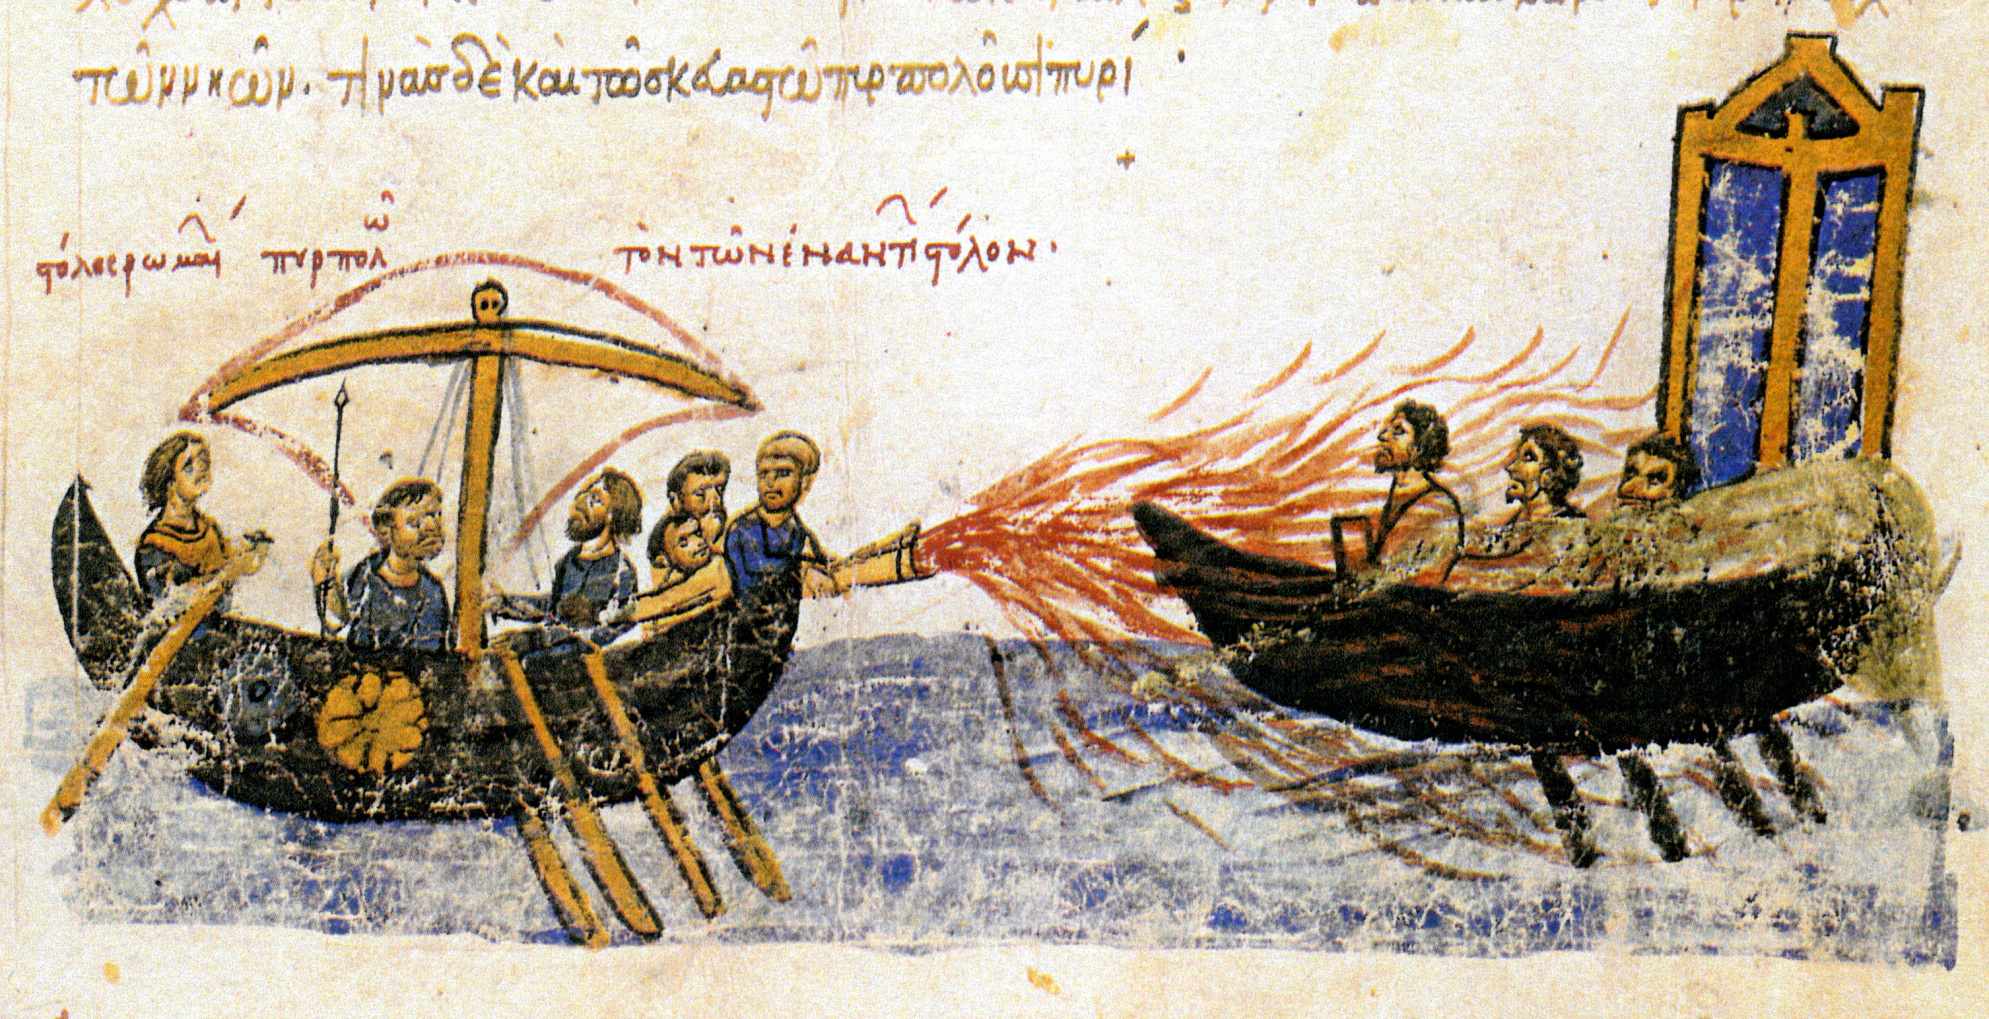 "Den romerska flottan bränner ner den motsatta flottan" – Ett bysantinskt skepp som använder grekisk eld mot ett skepp som tillhör rebellen Thomas the Slav, 821. 12-talsillustration från Madrid Skylitzes.